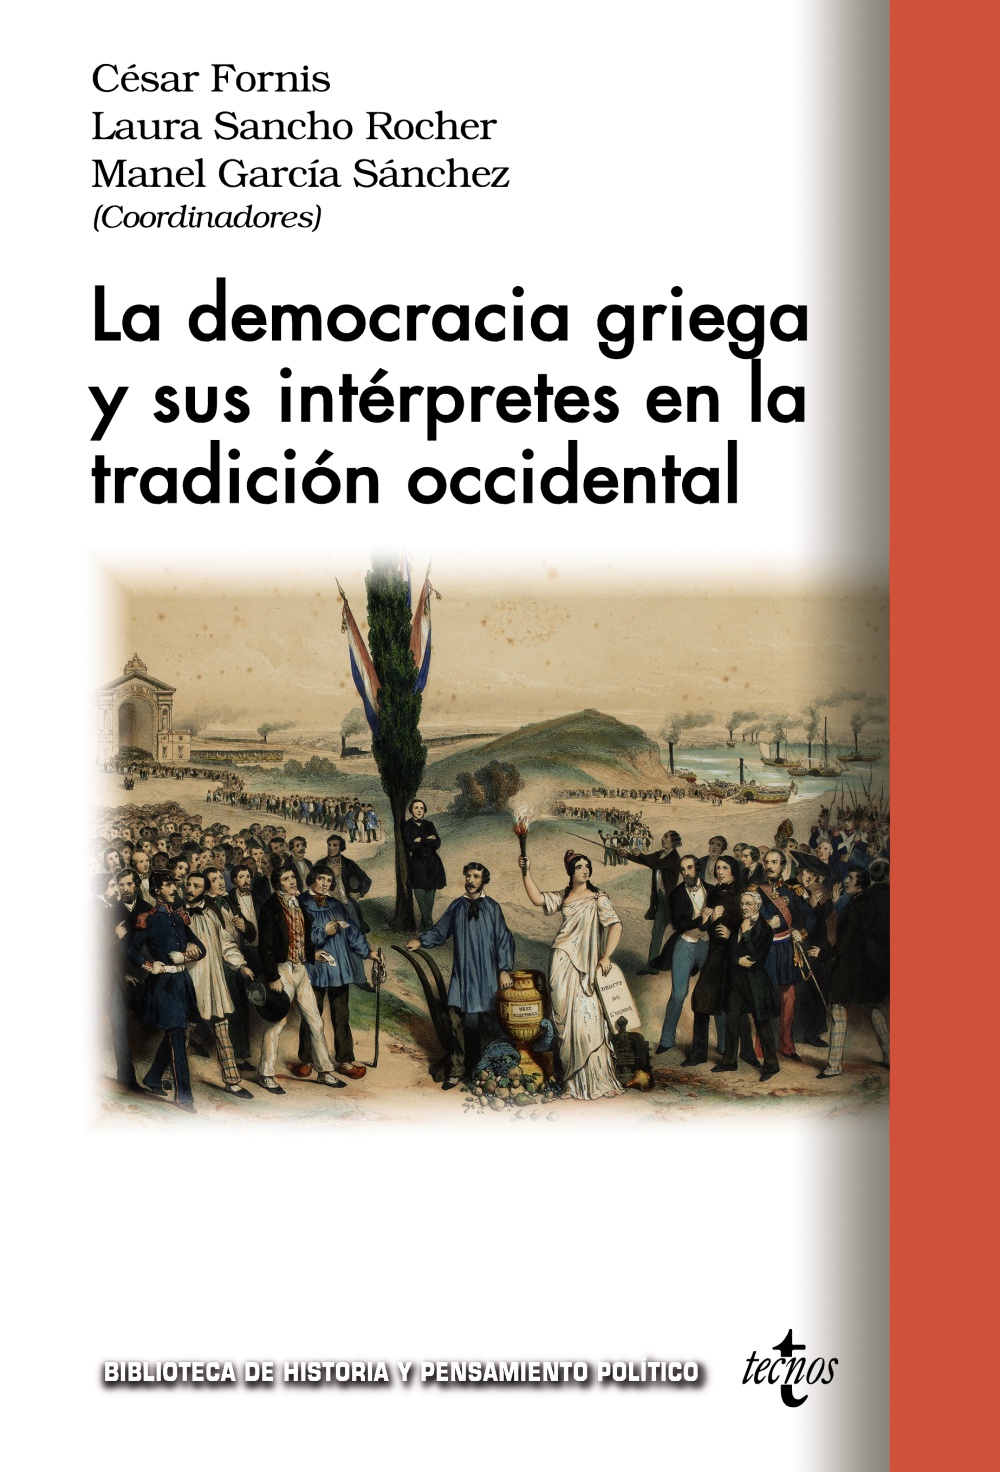 Imagen de portada del libro La democracia griega y sus intérpretes en la tradición occidental